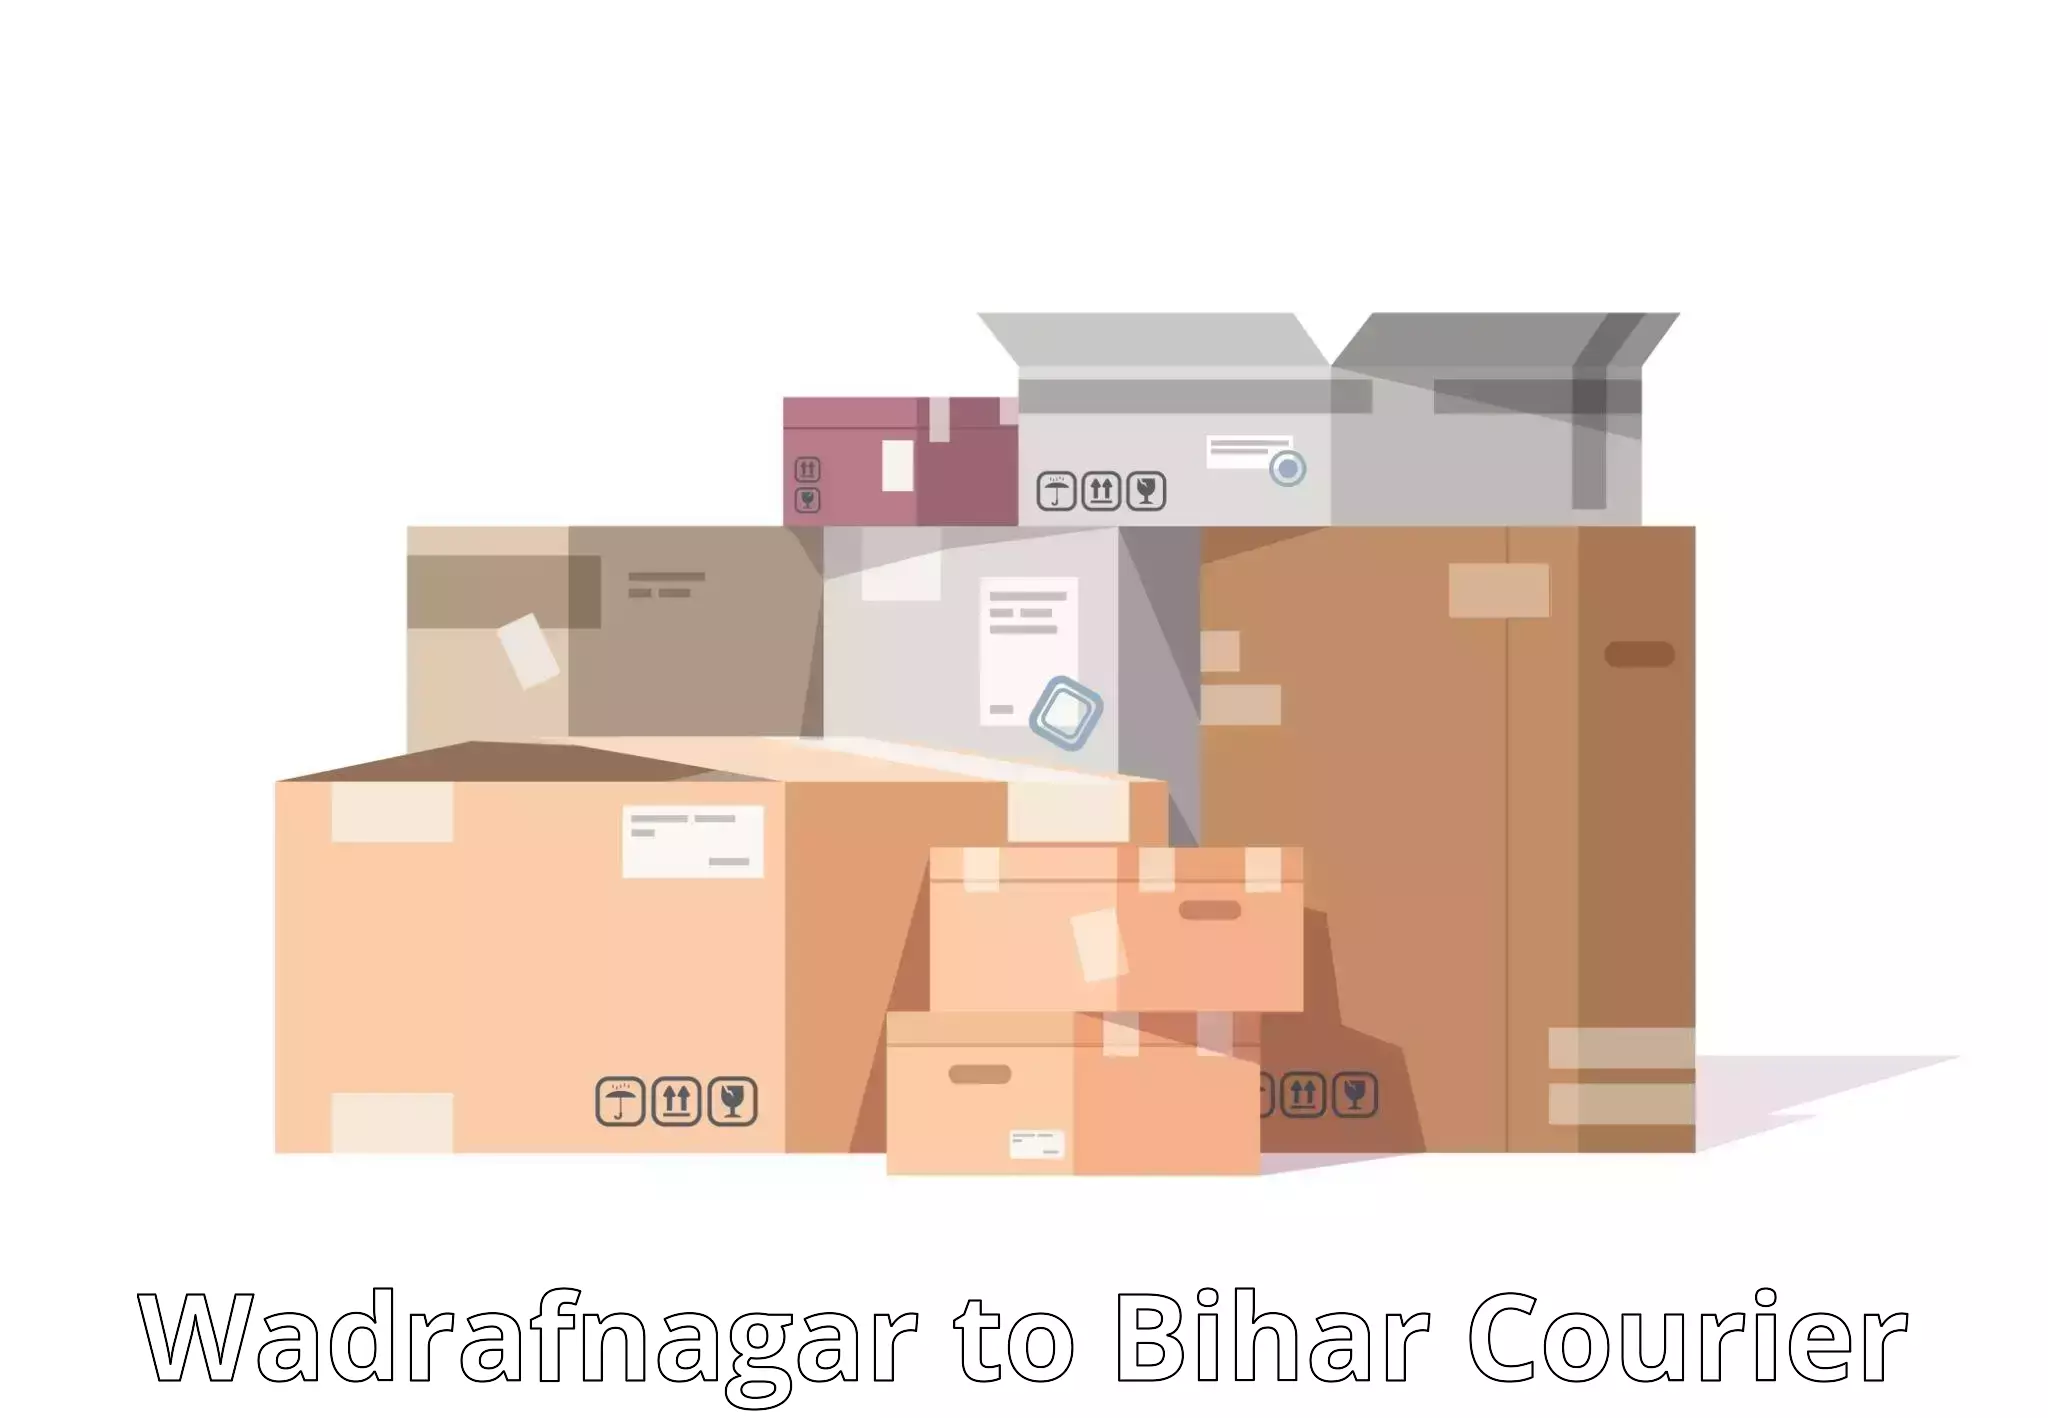 Cost-effective courier solutions Wadrafnagar to Mairwa